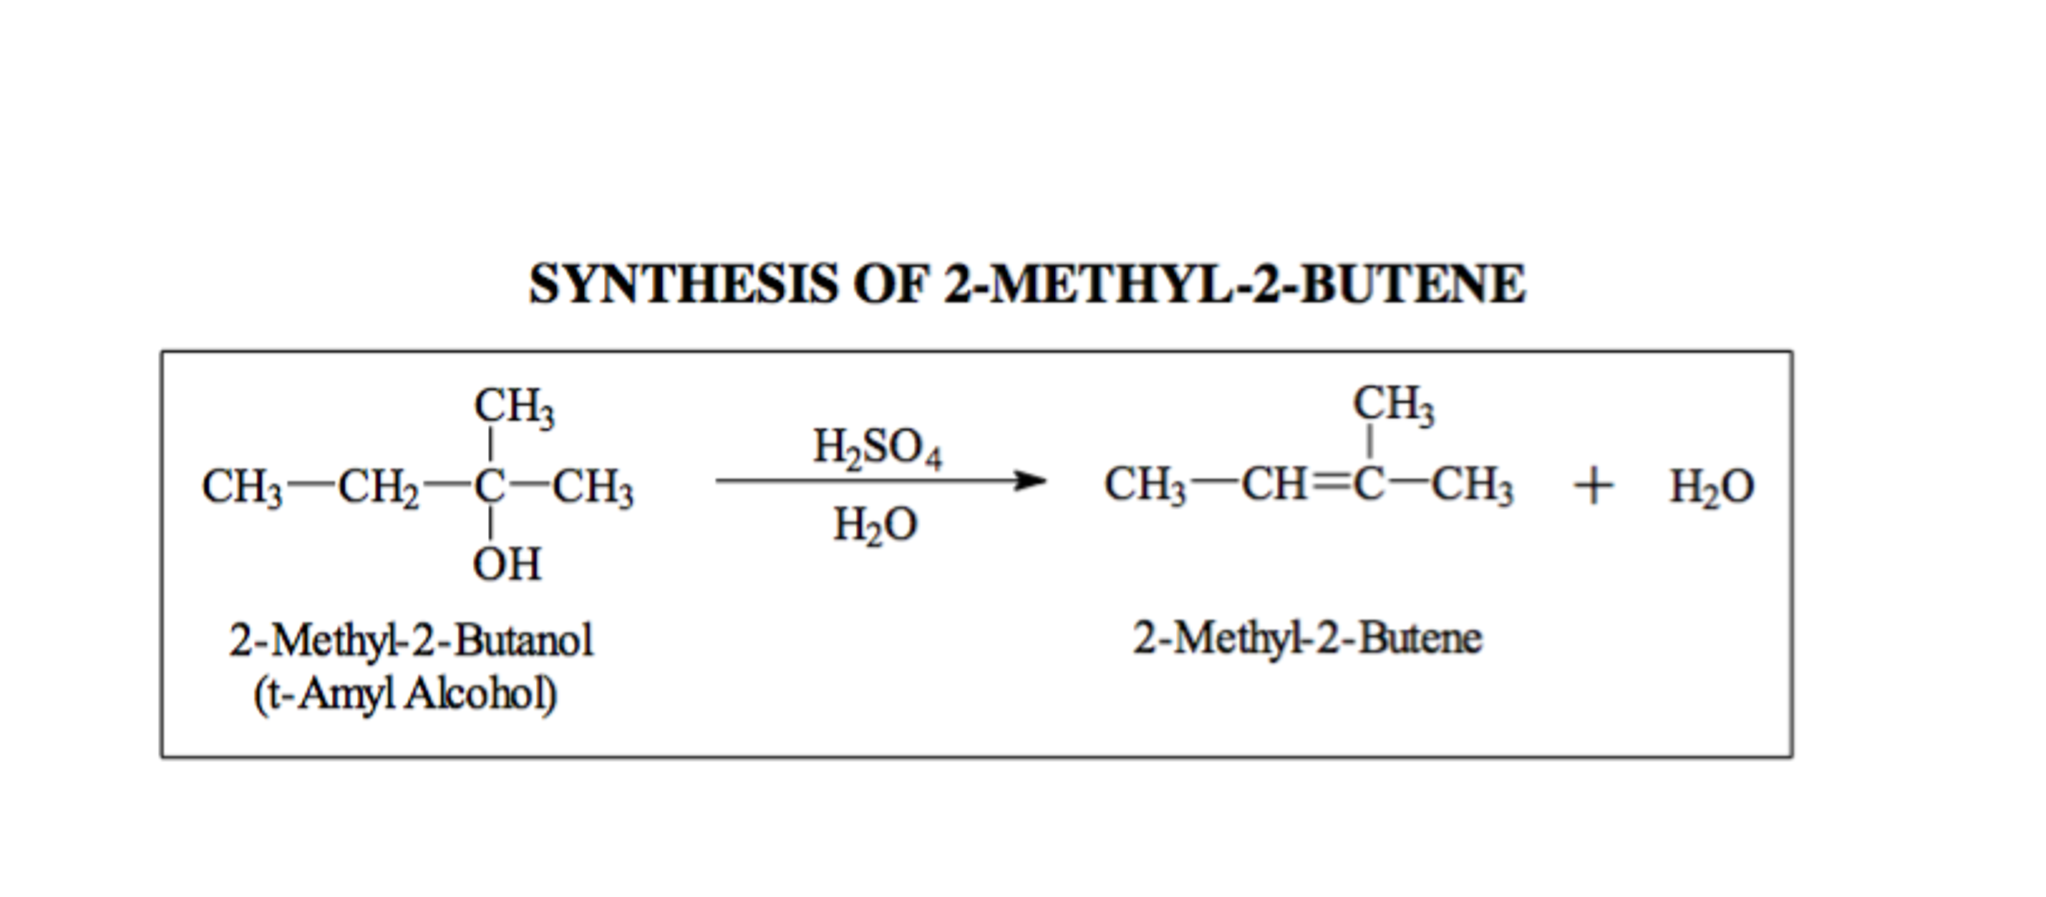 Бутан koh. 3 Метилбутанол 1 h2so4 конц. 2 Метилбутанол 2 h2so4. Пропанол 1 серная кислота 140. 2 Метилбутанол и серная кислота.